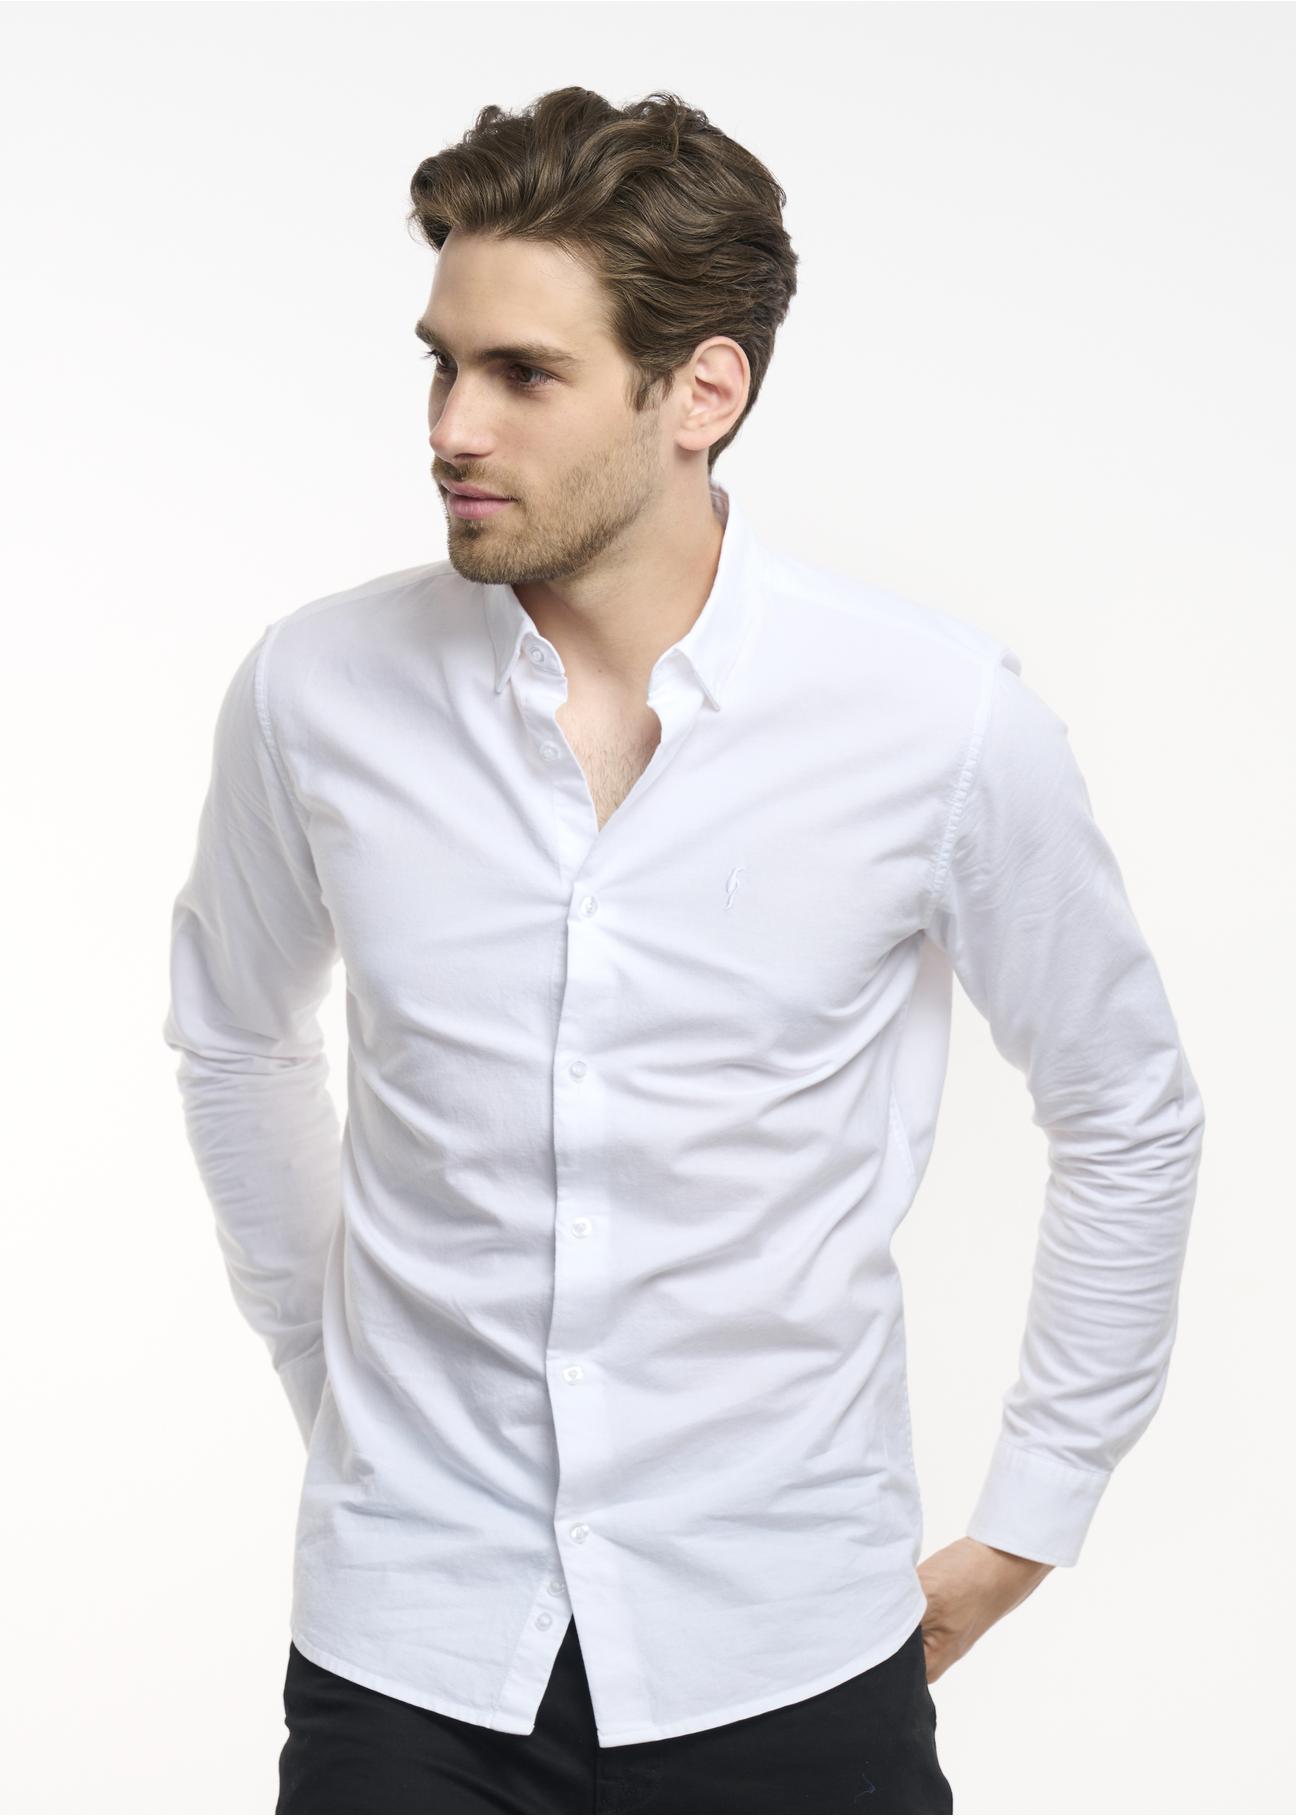 Klasyczna biała koszula męska KOSMT-0298-11(Z23)